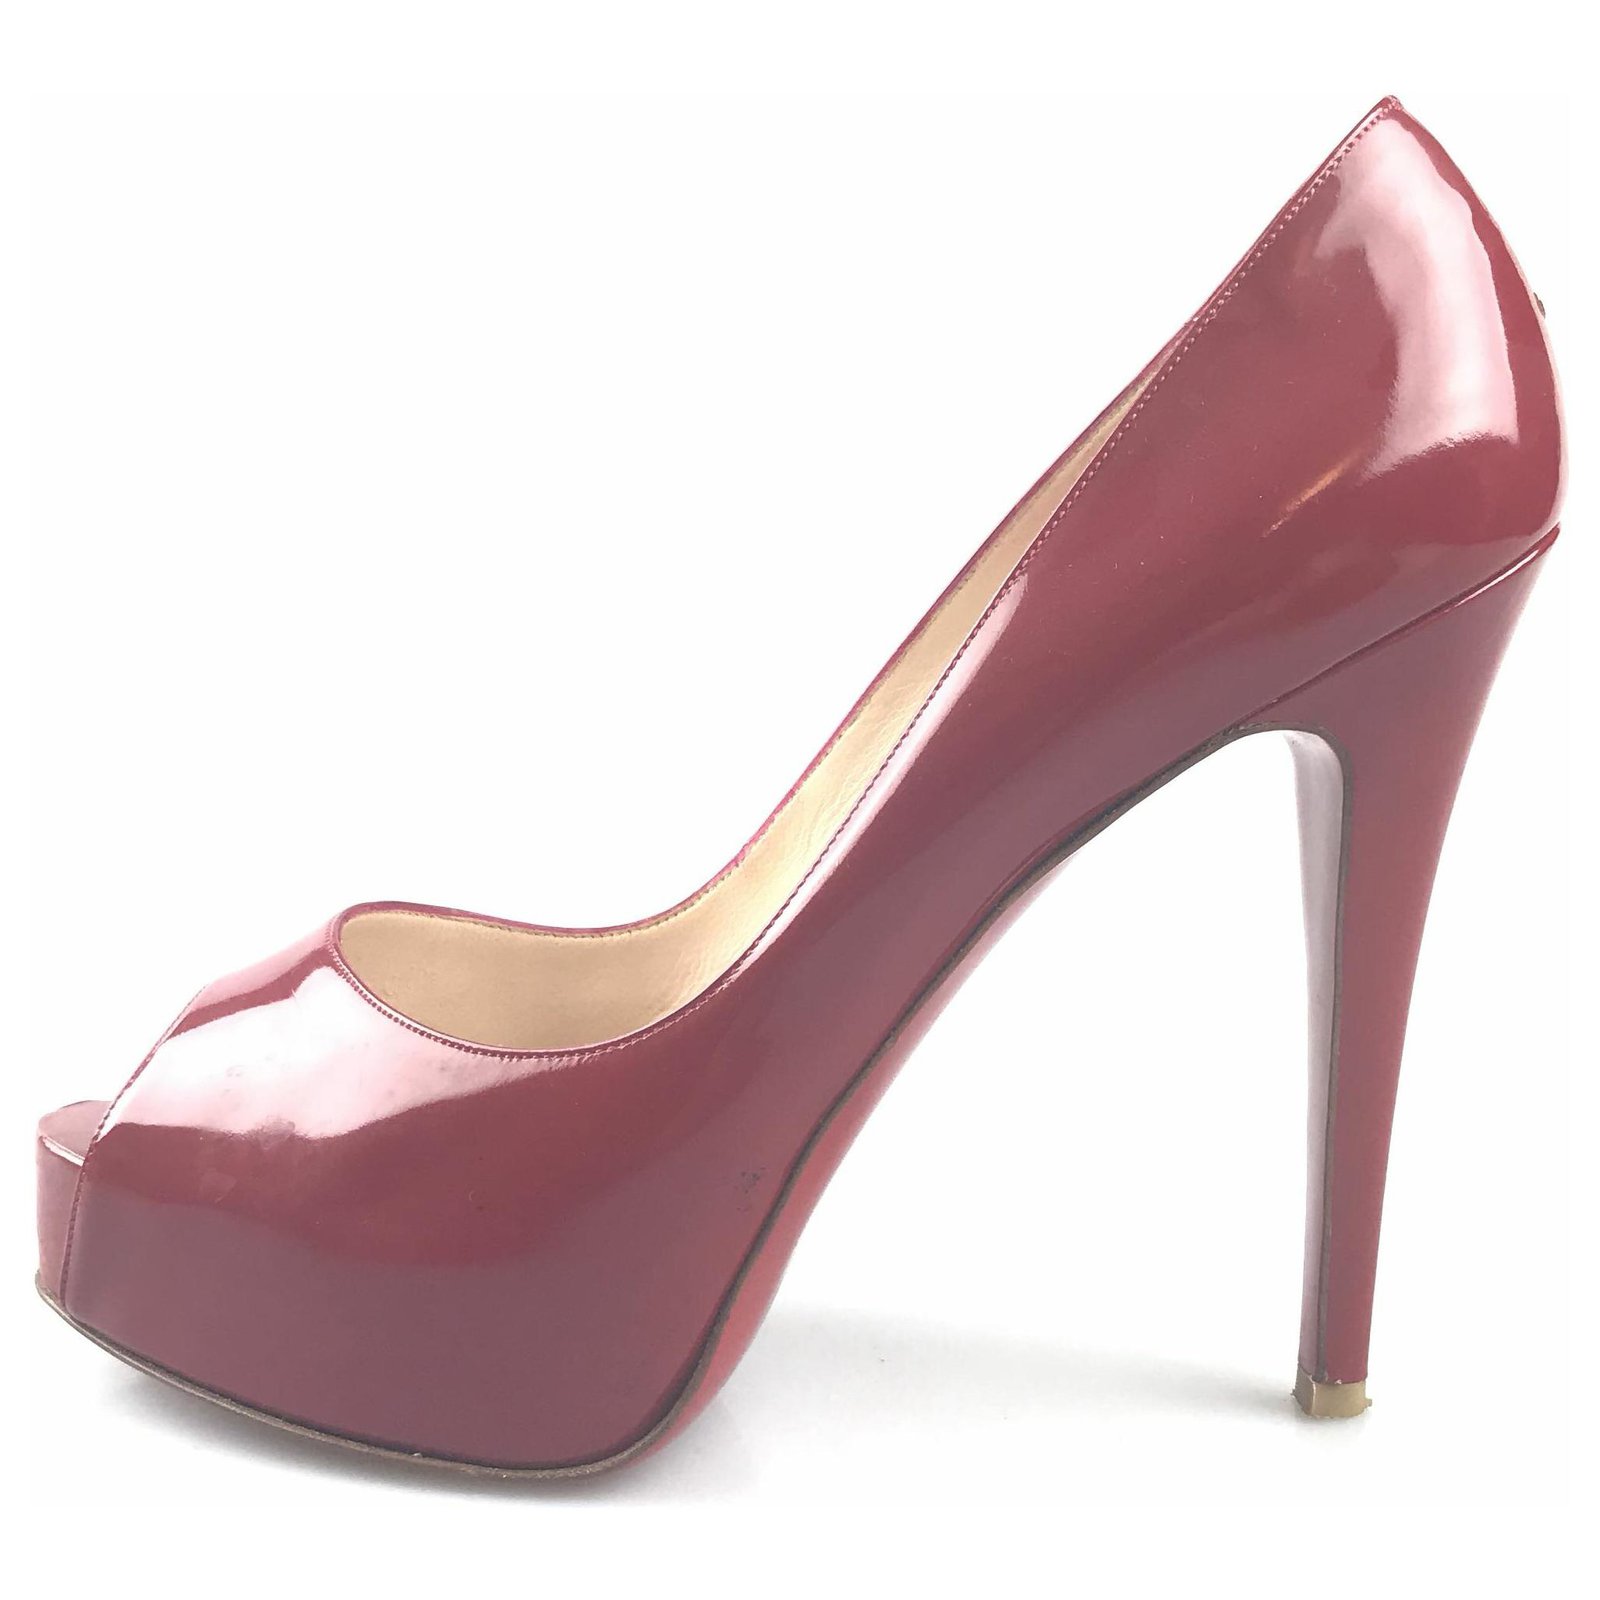 10 US/ 41 EU Christian Louboutin Paris Red Patent High Heel